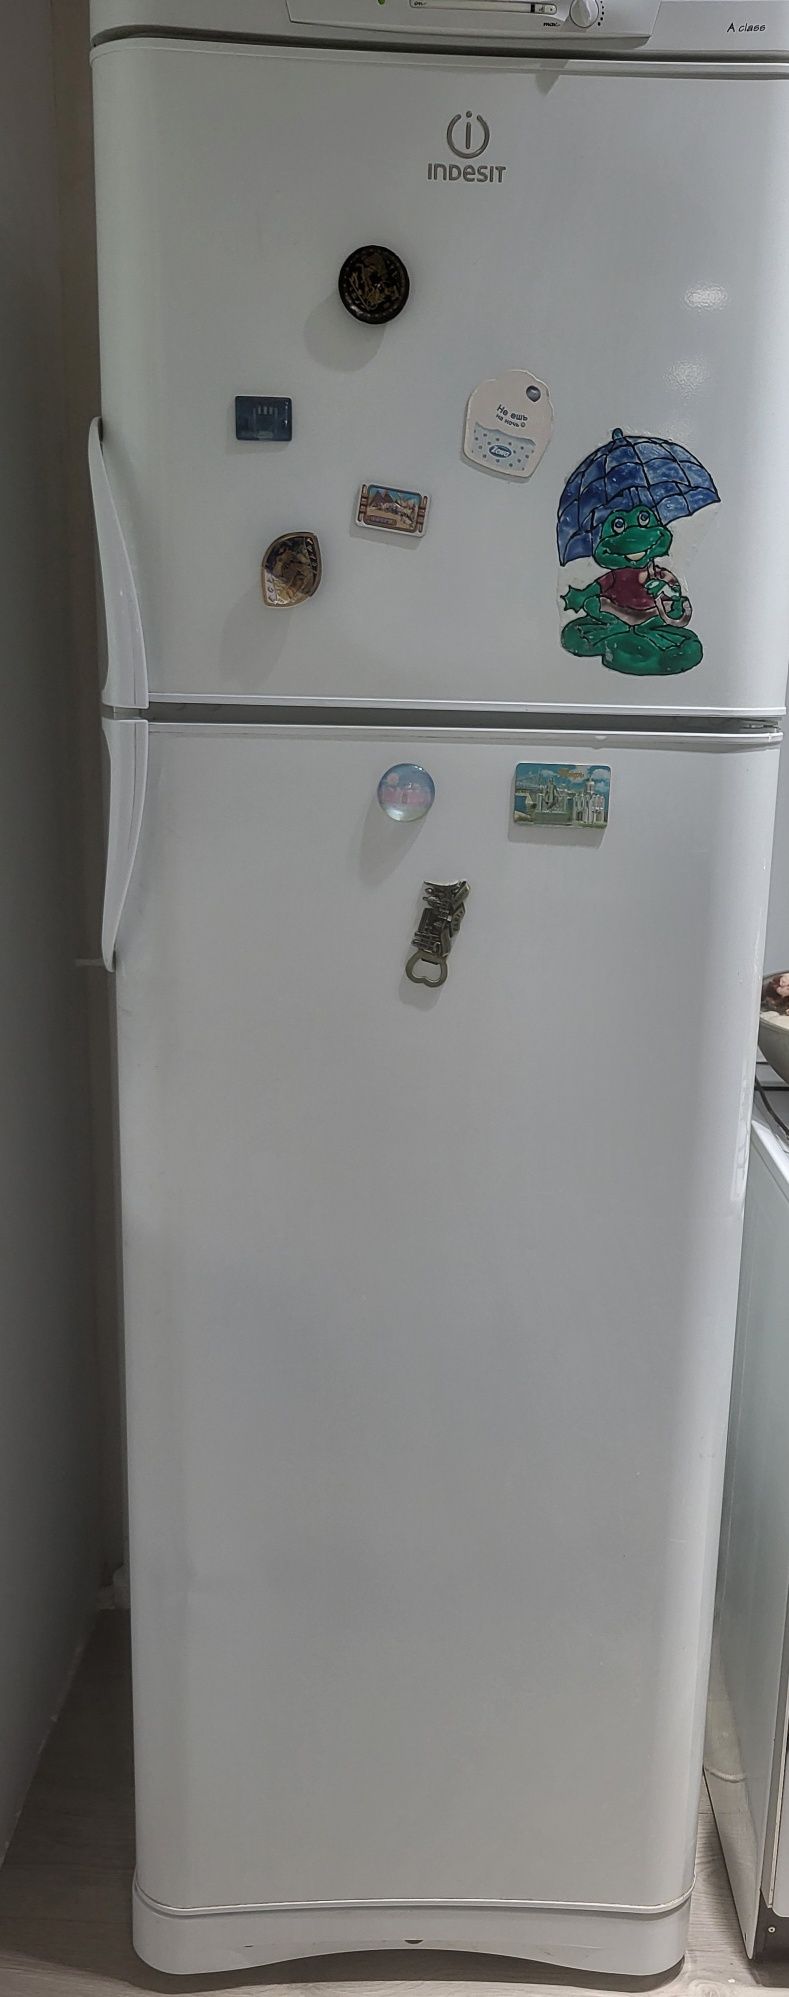 Продам холодильник Индезит за 55.000 в отличном состоянии